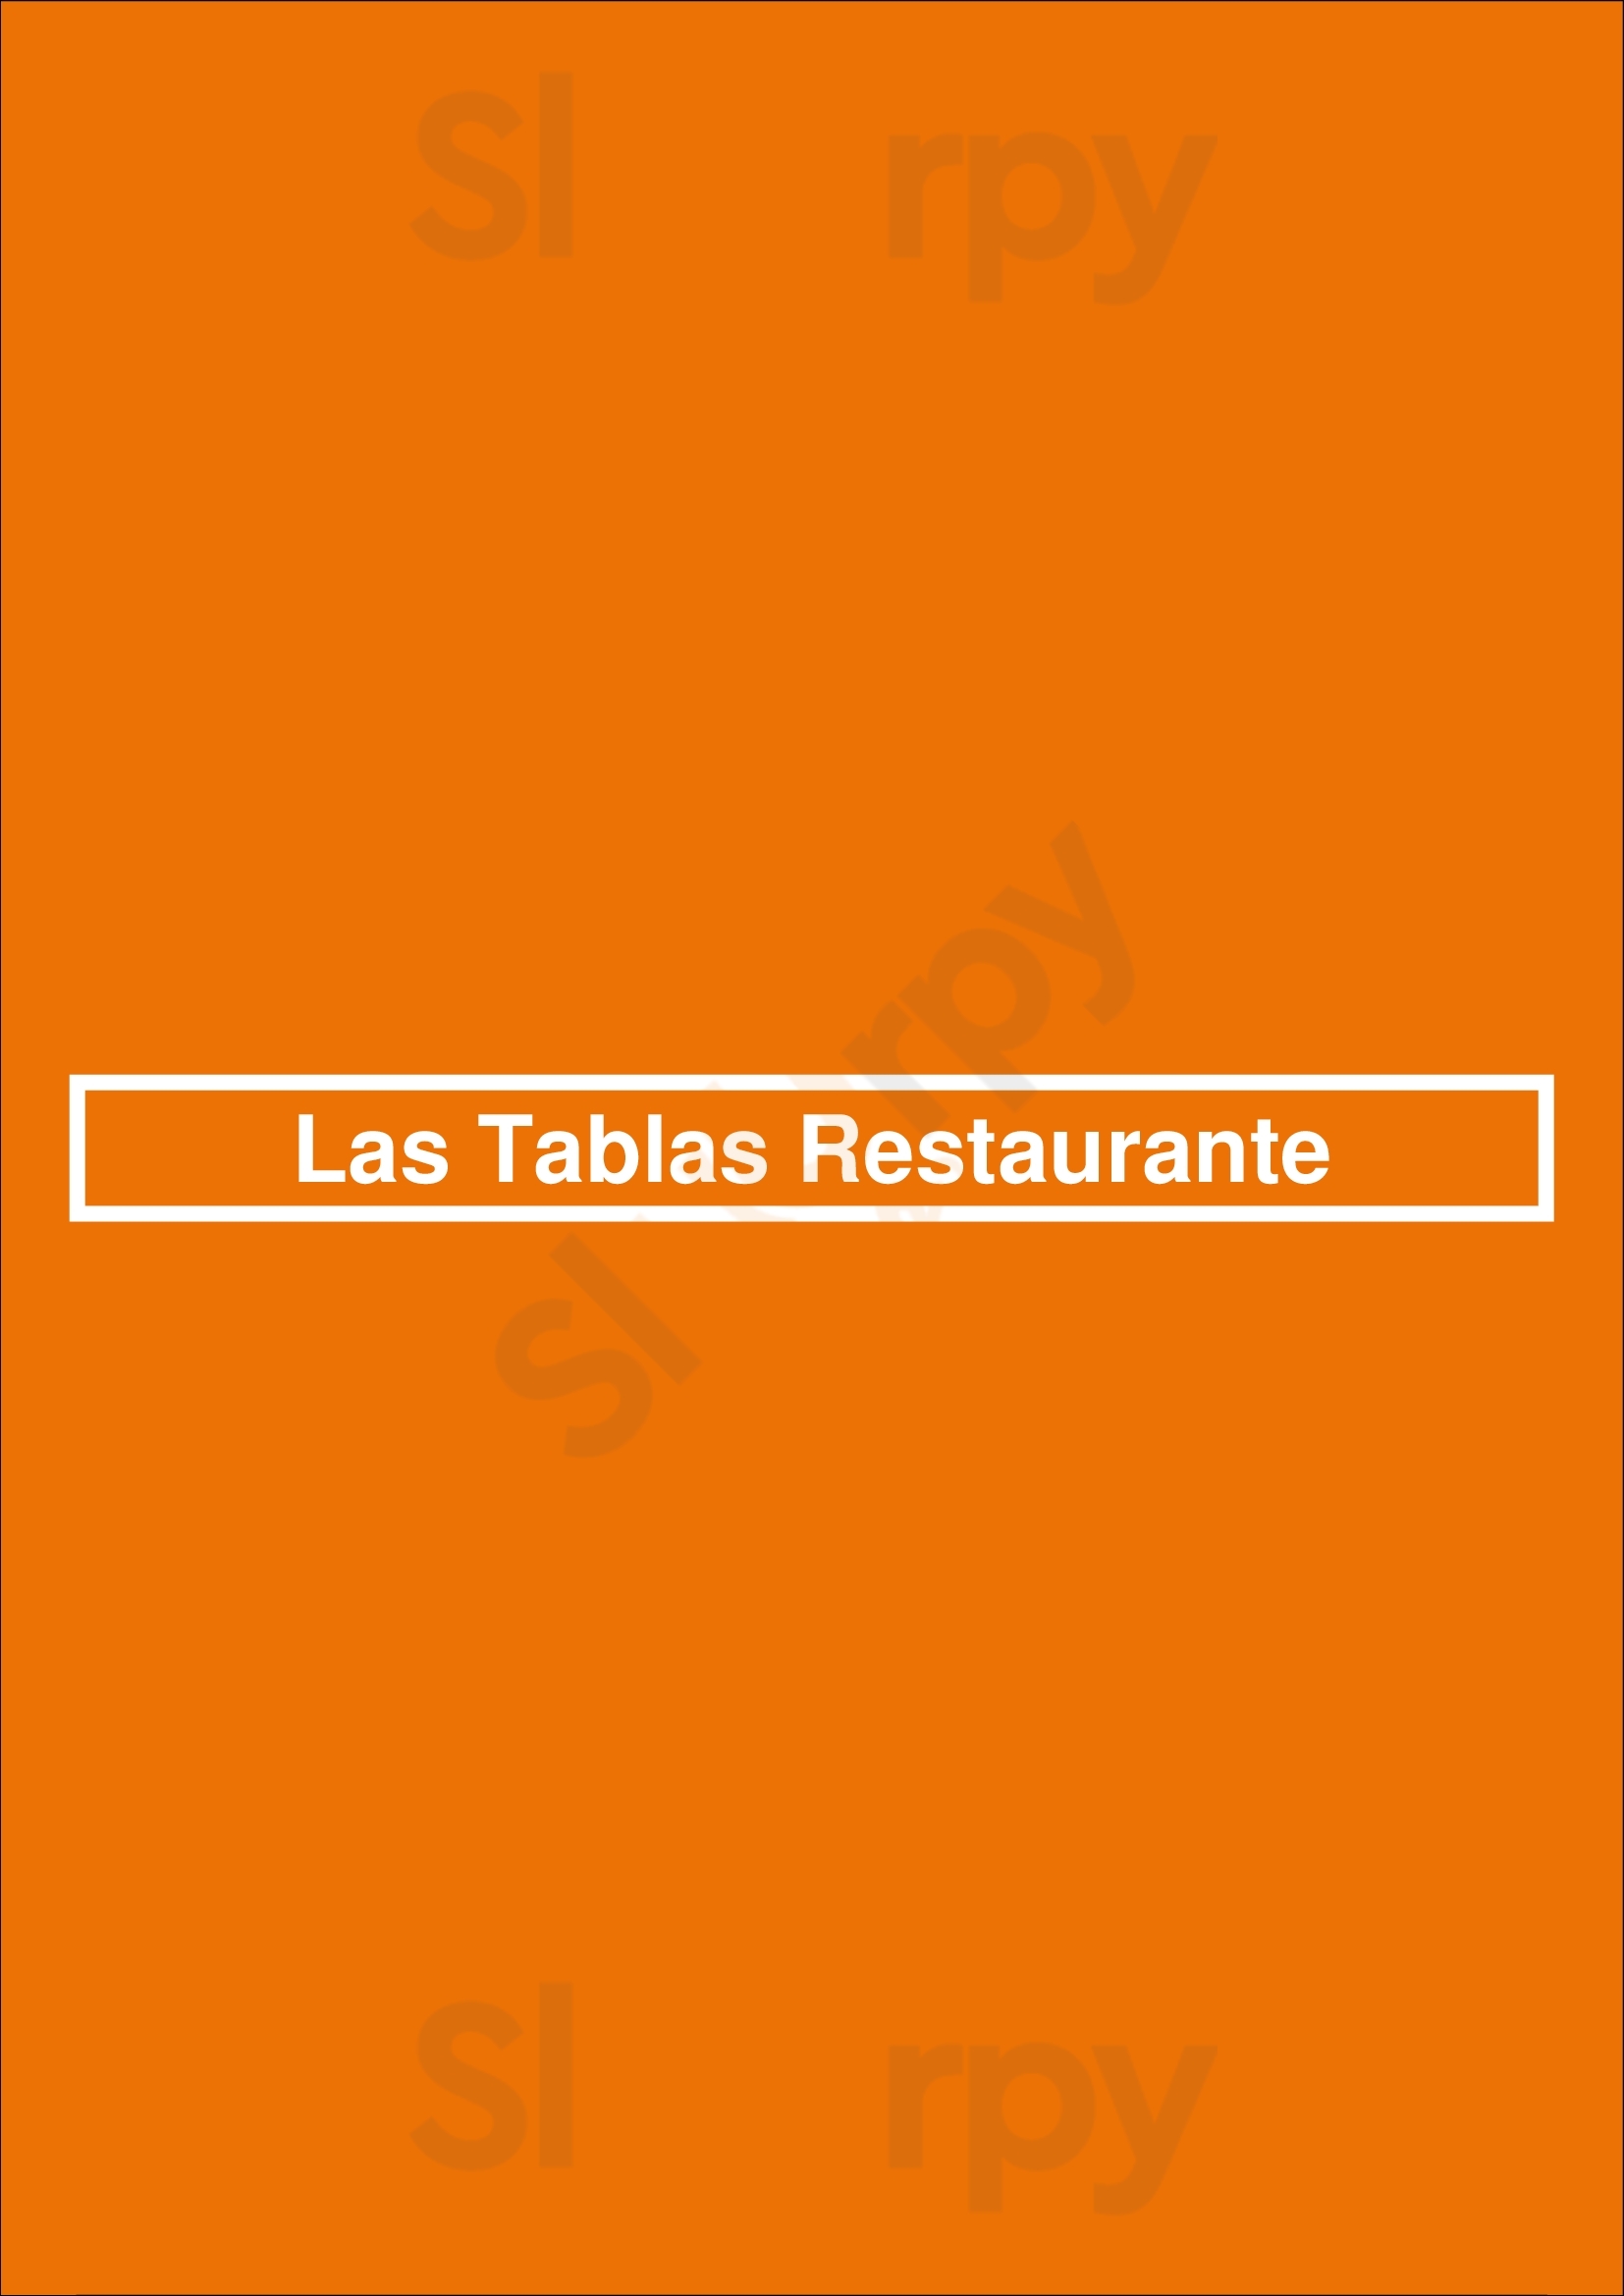 Las Tablas Restaurante Nordelta Menu - 1